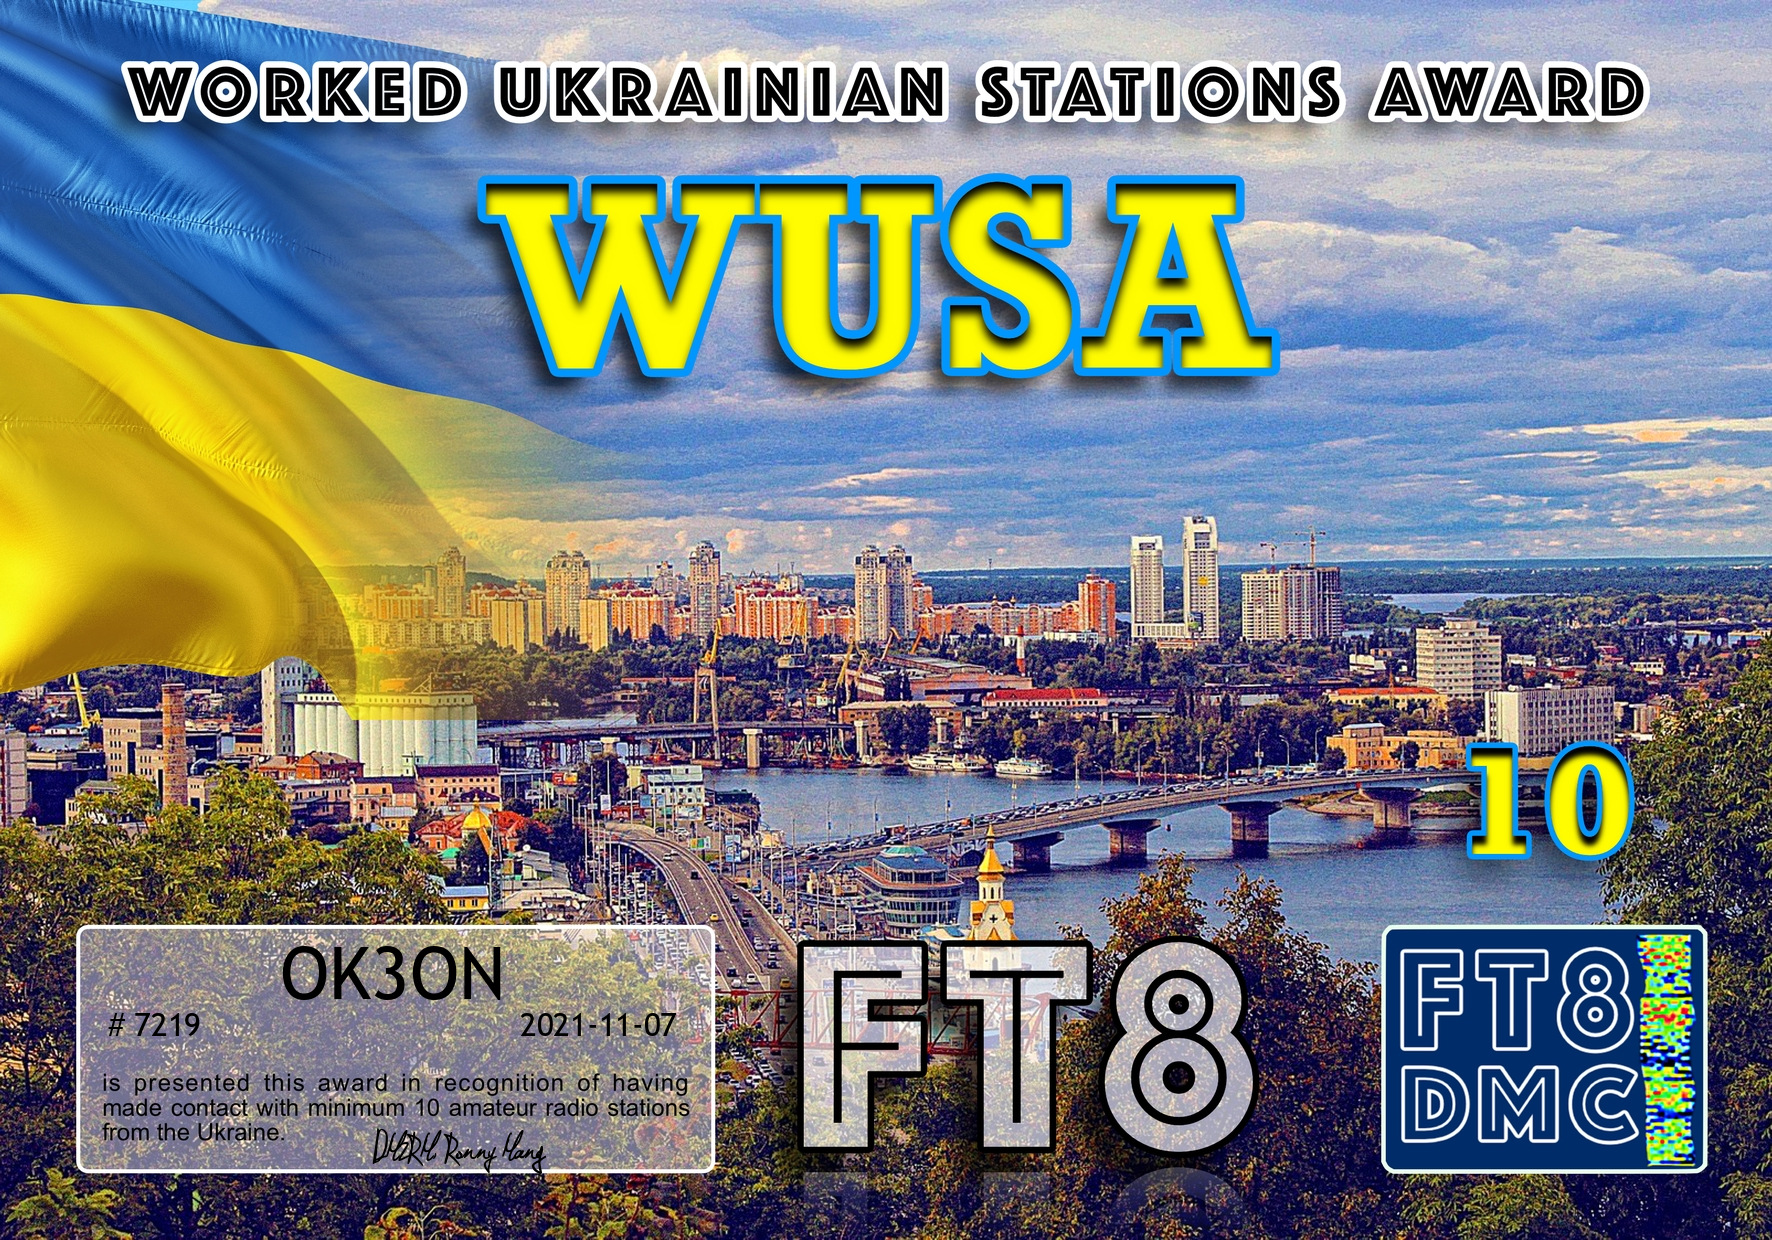 awards/OK3ON-WUSA-III_FT8DMC.jpg